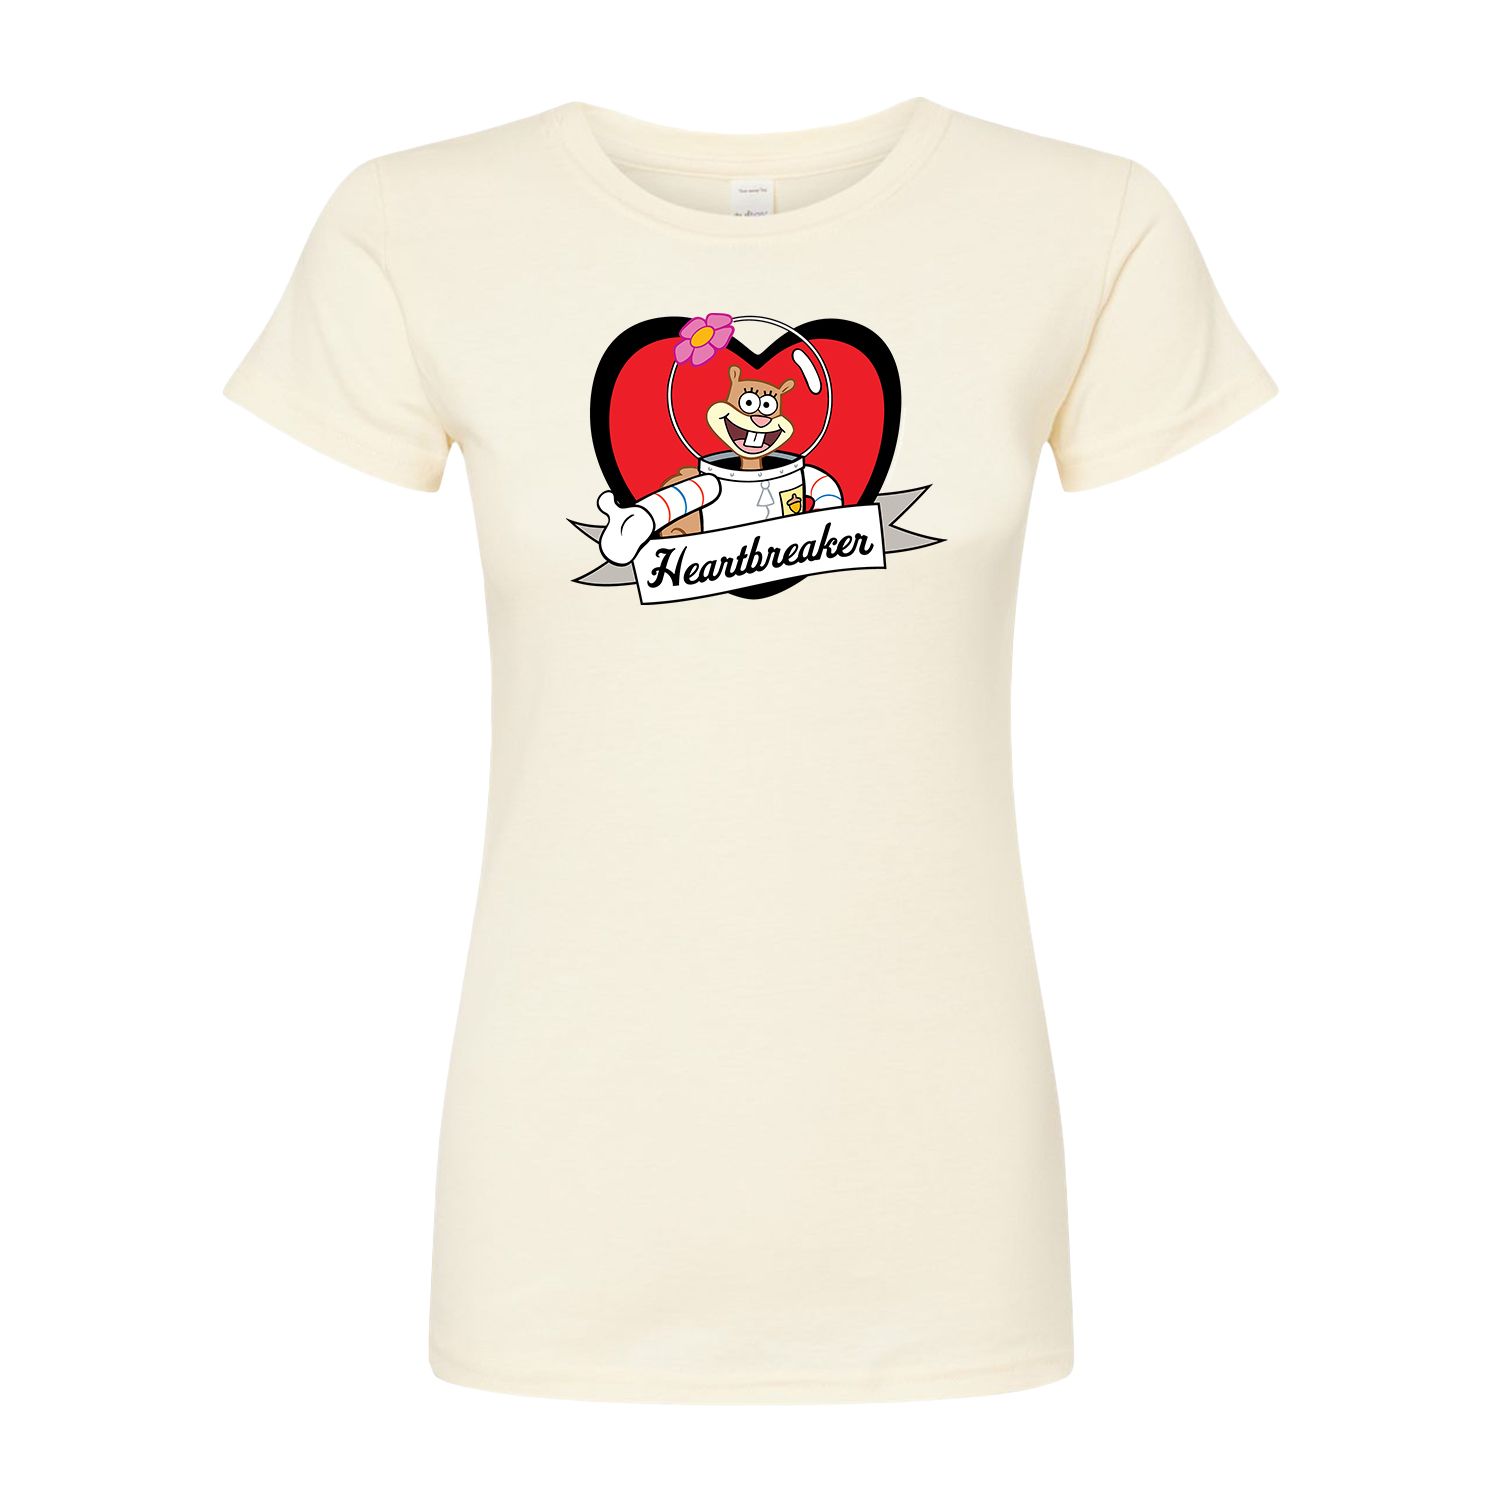 Детская футболка с рисунком «Губка Боб «Сердцеед»» Sandy Licensed Character детская футболка енот сердцеед 128 красный